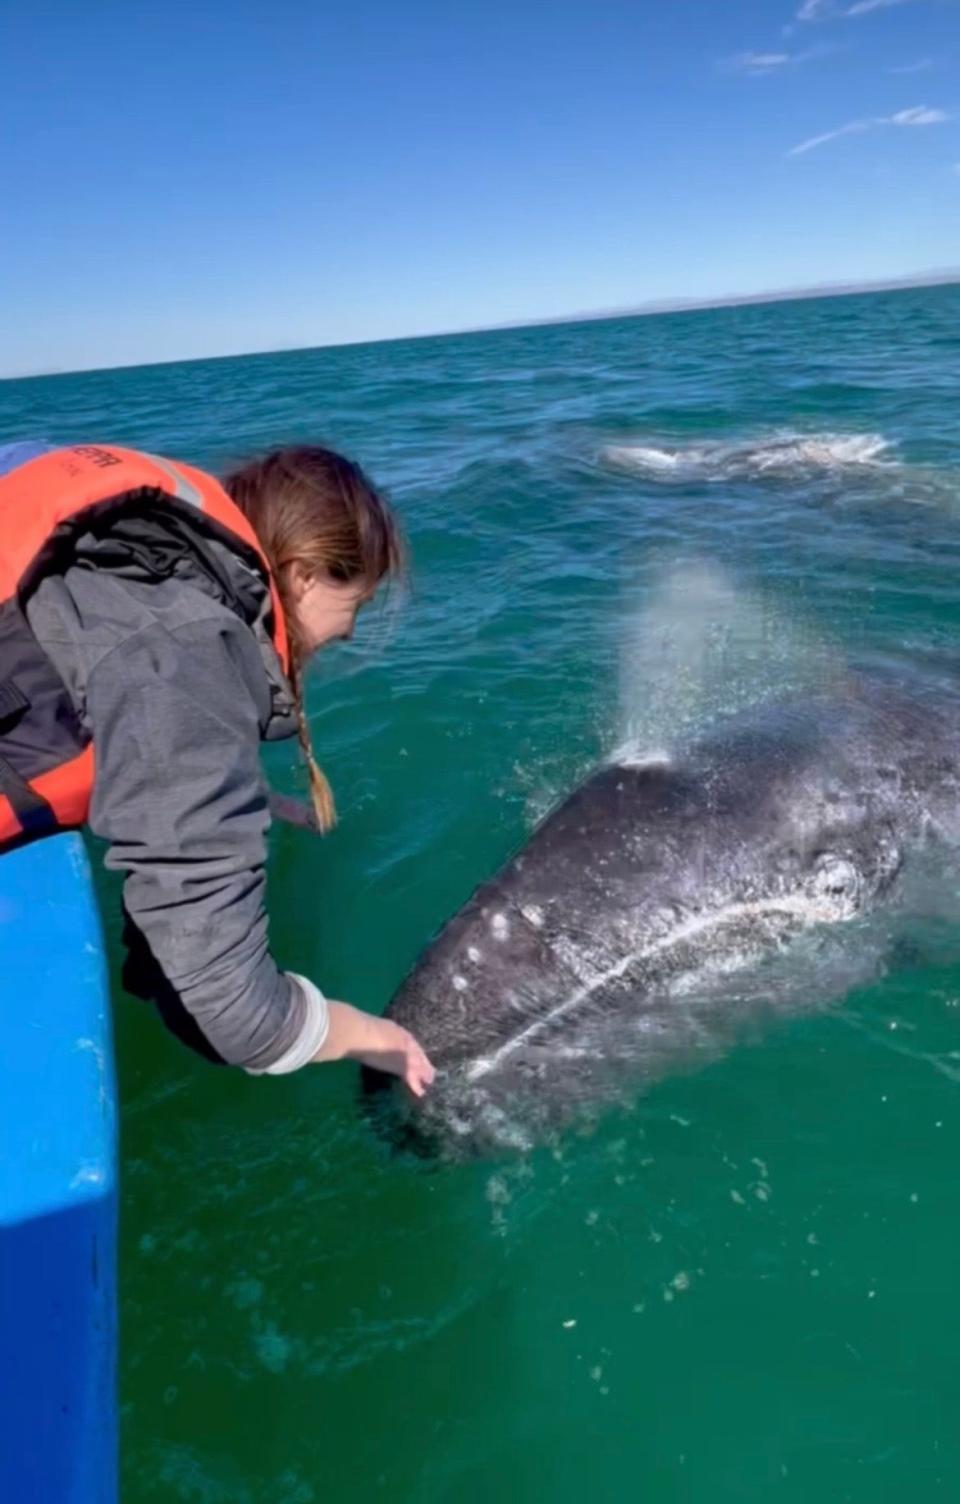 daina buchner touching a whale